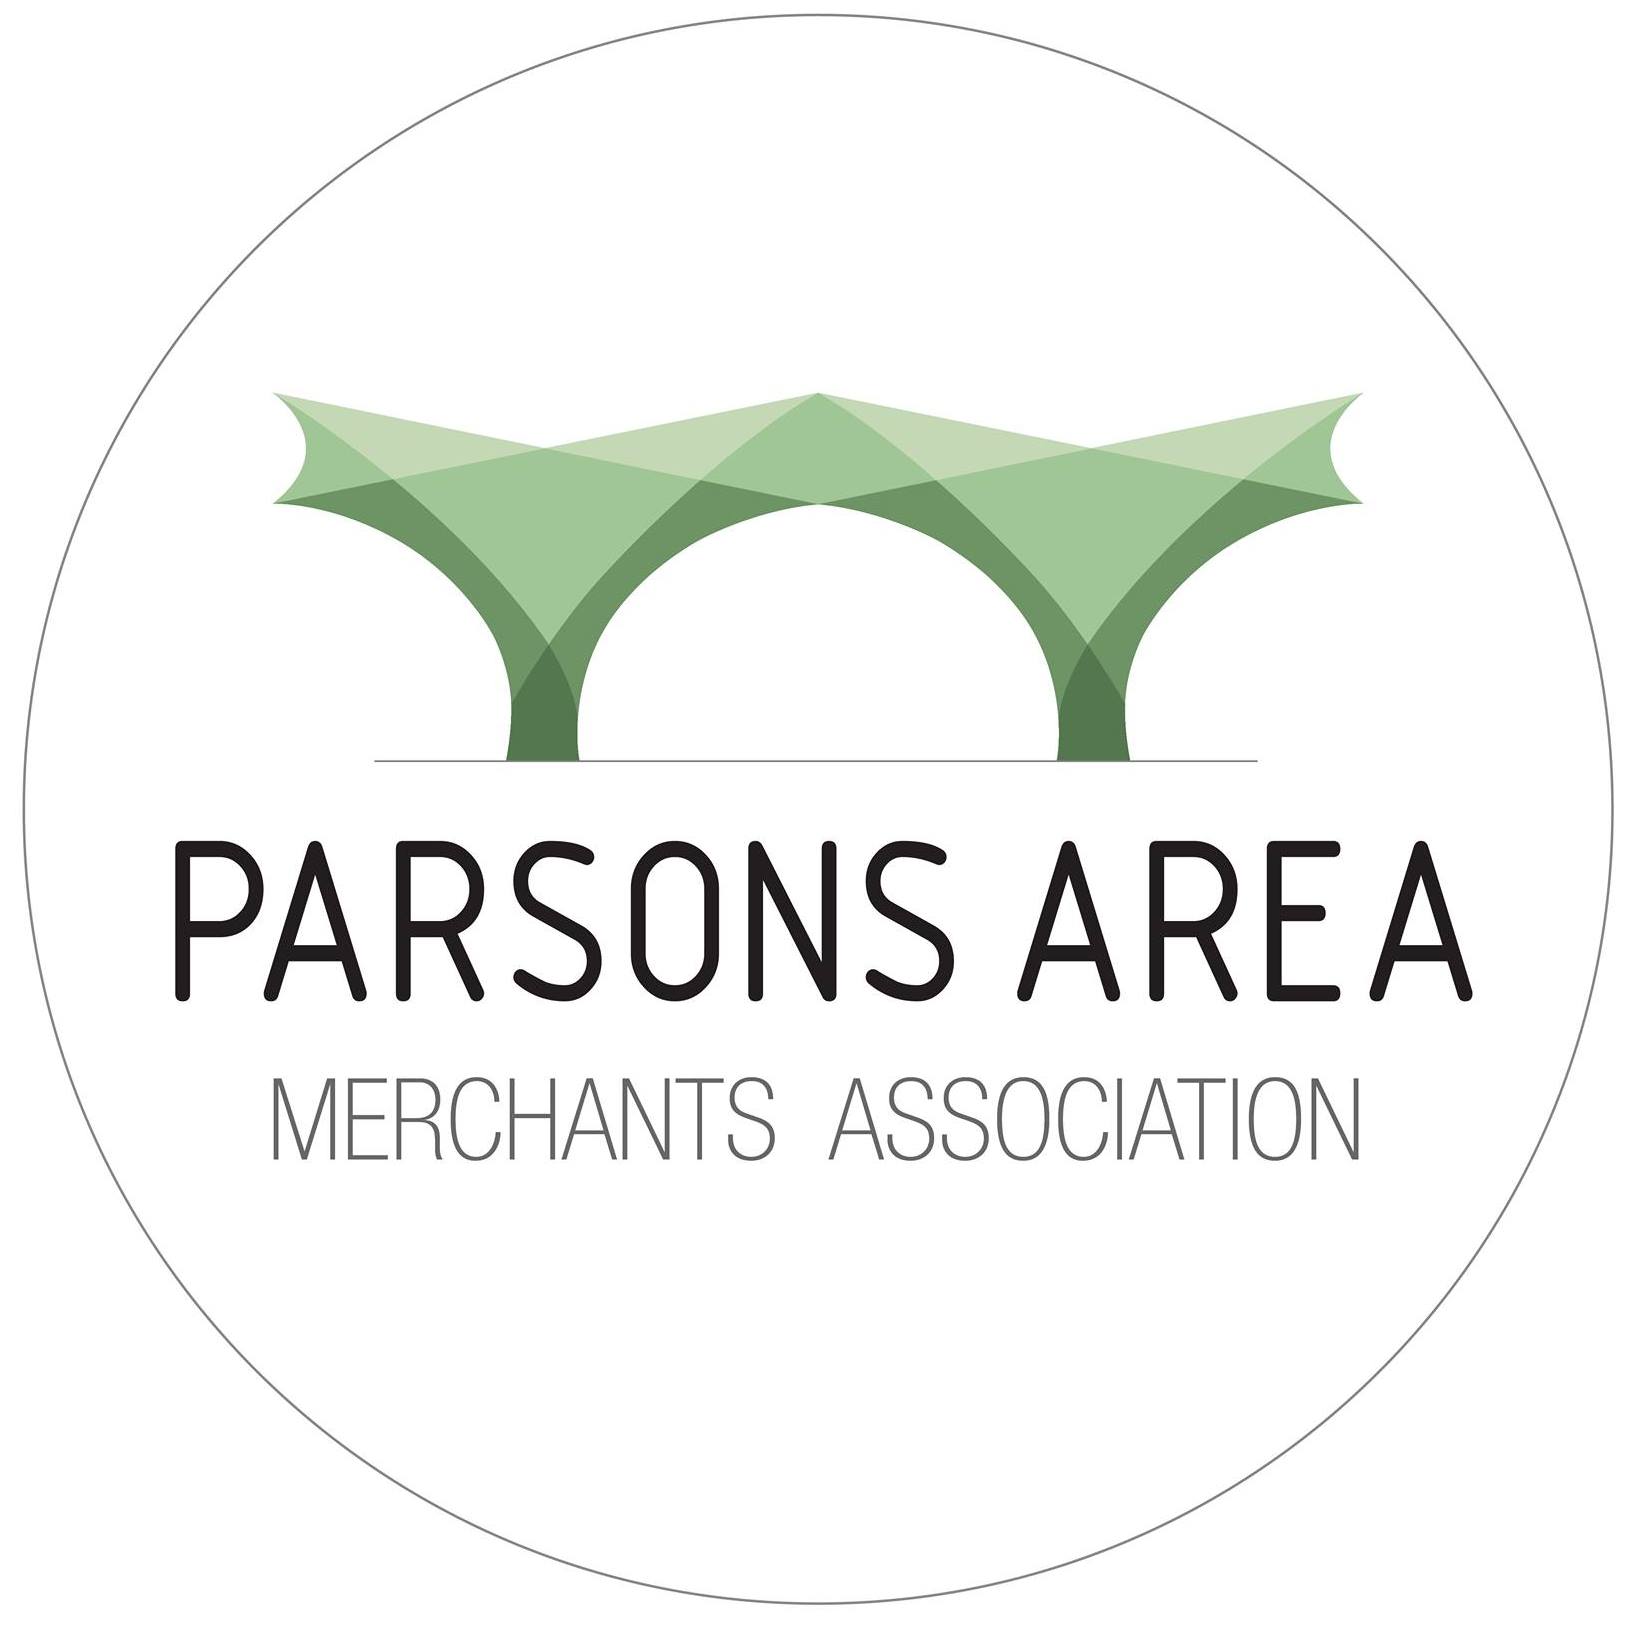 Parsons Area Merchants Association